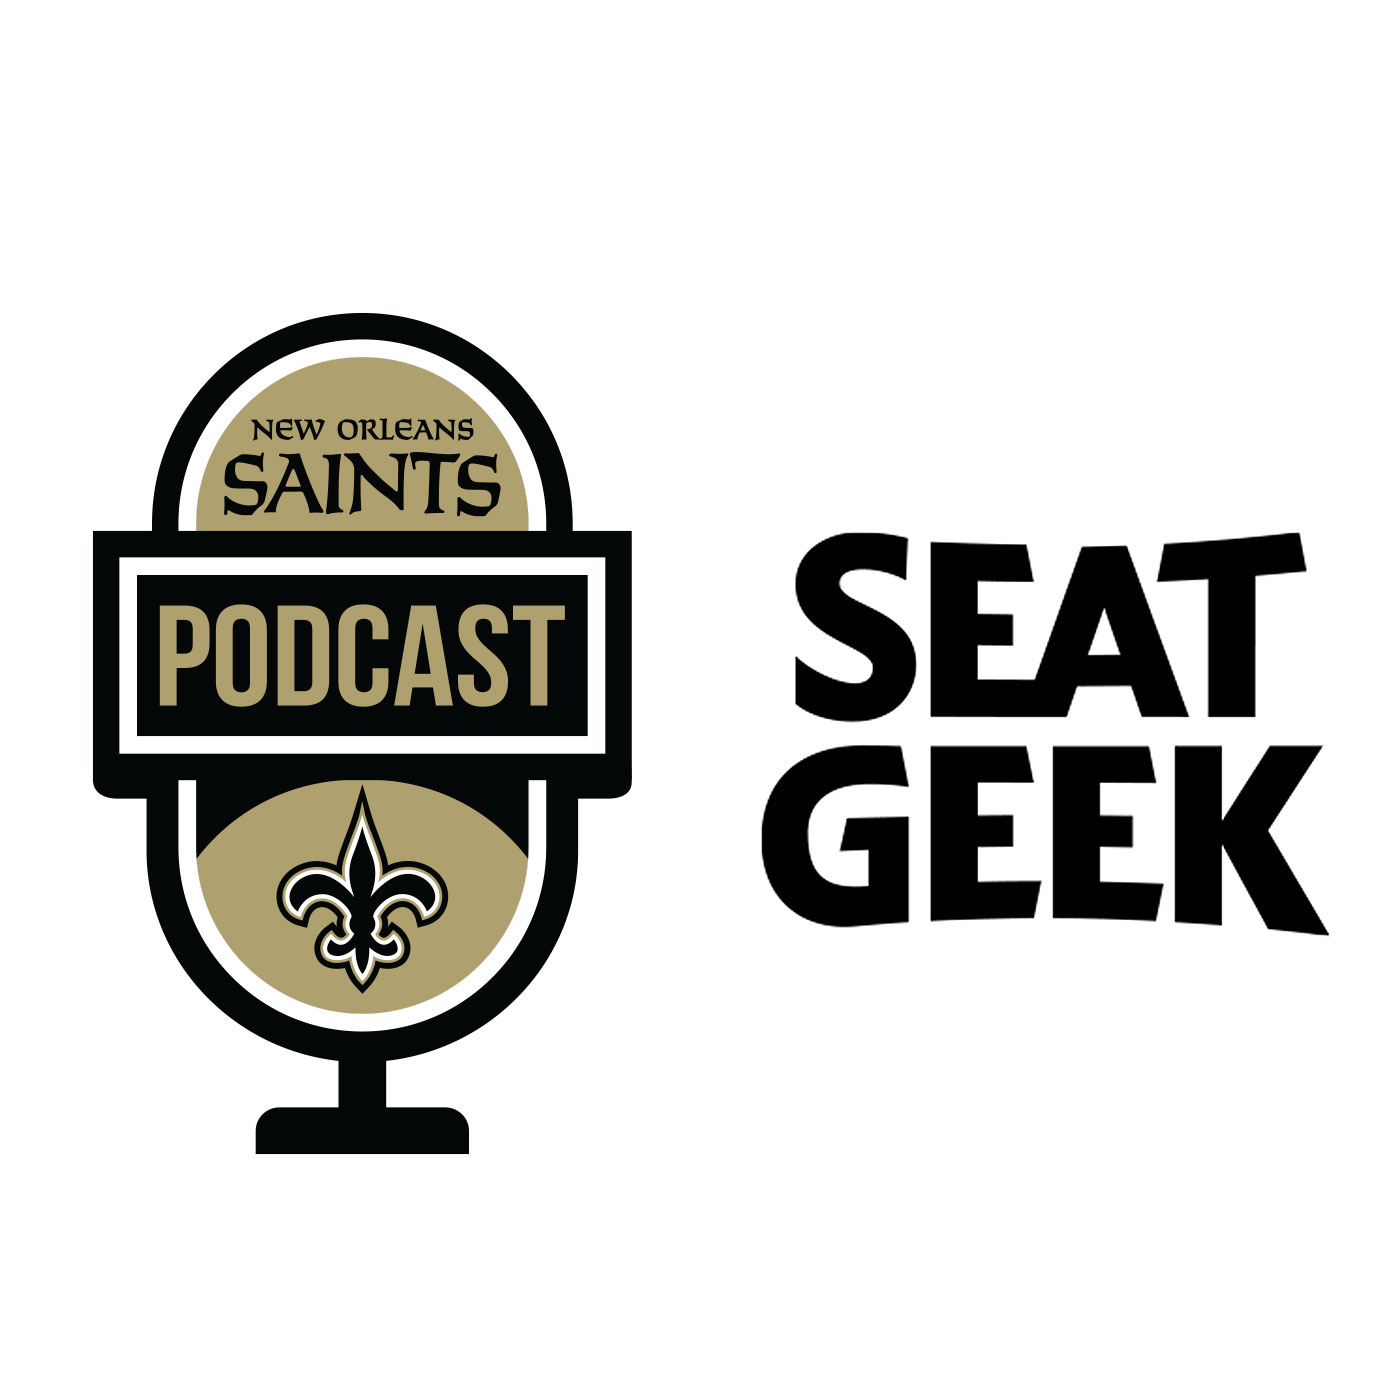 New Orleans Saints Podcast: Daniel Sorensen and Margaret Orr on